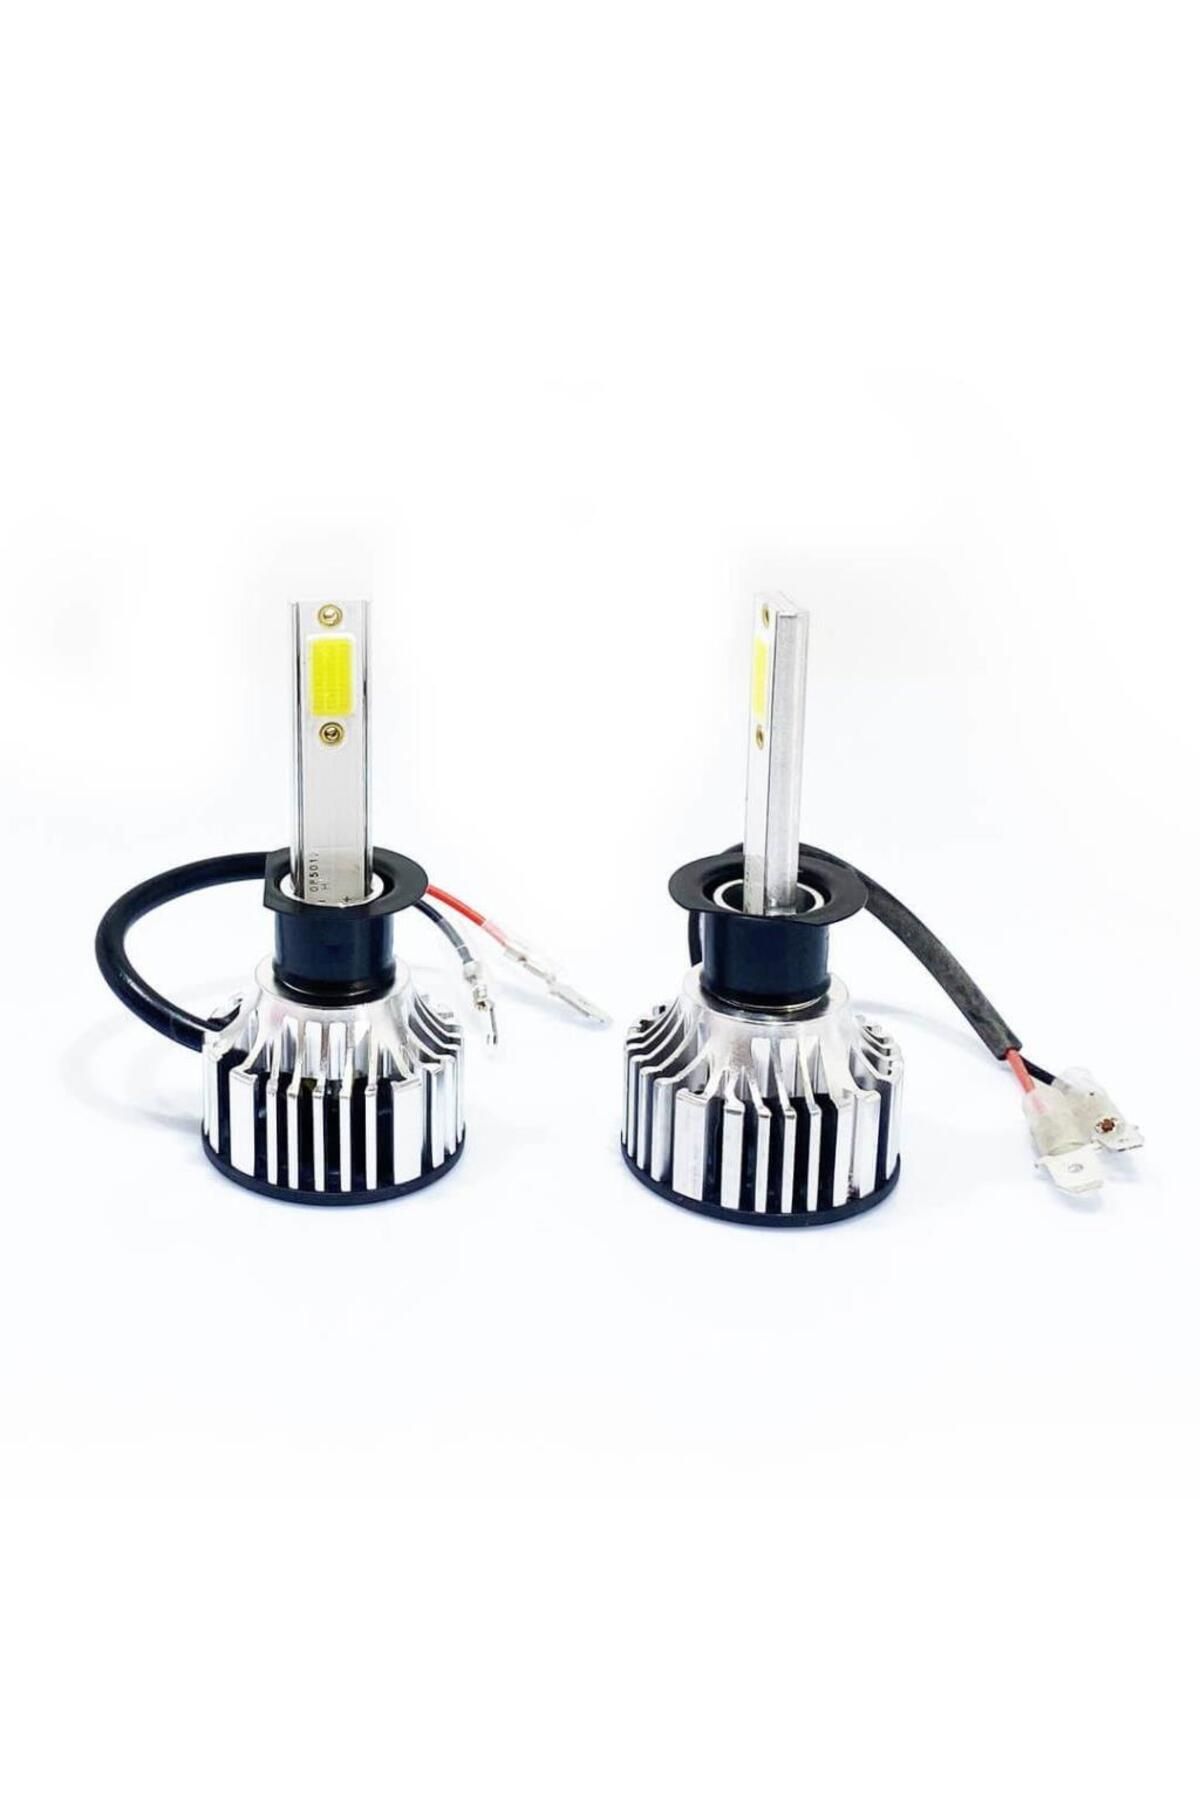 Photon Duo H1 12-24v LED Headlight